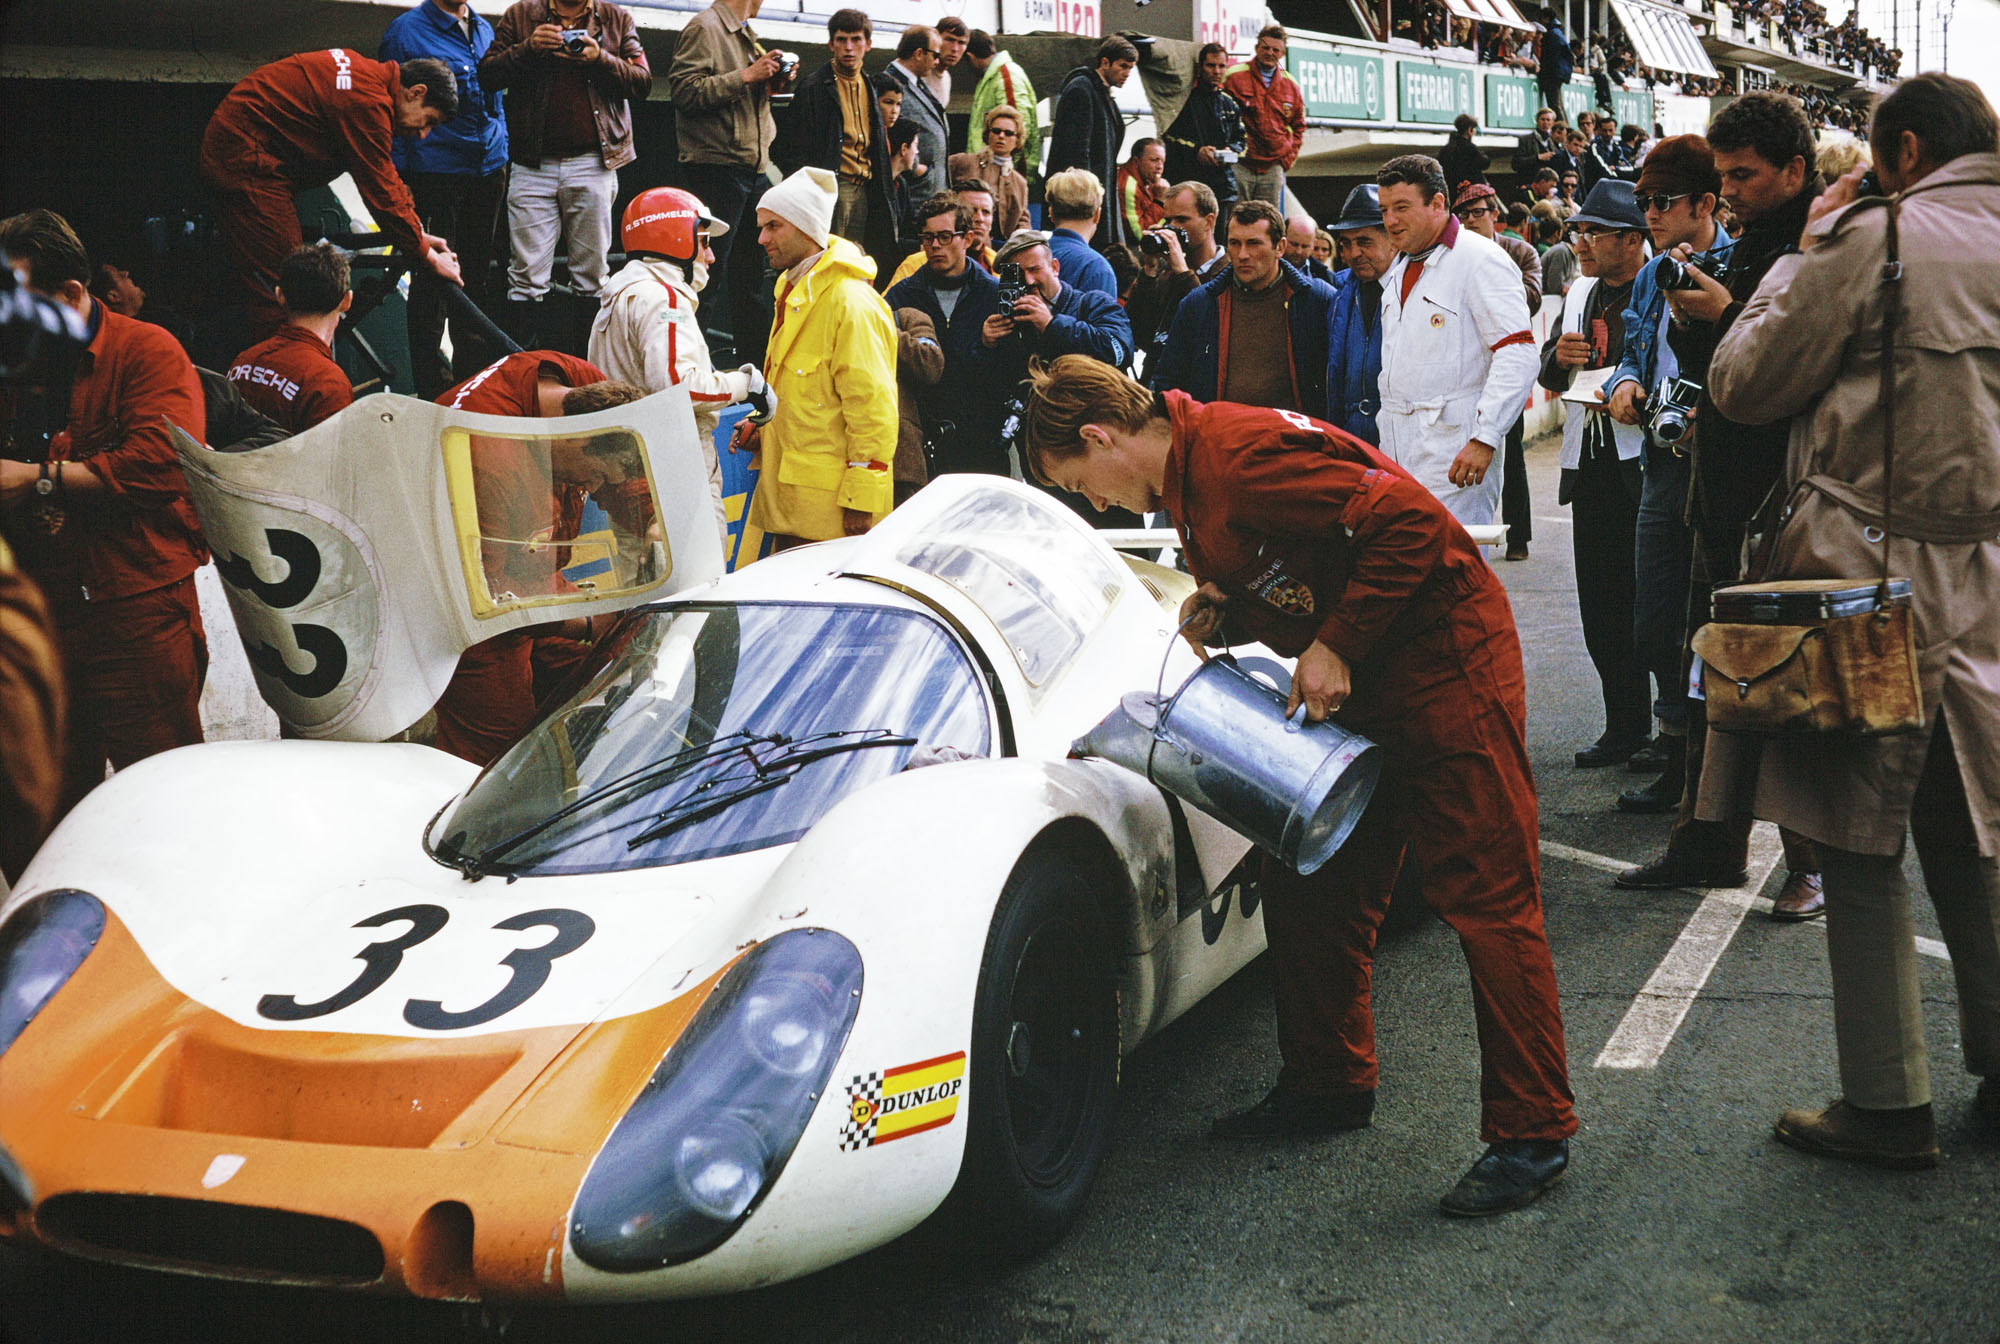 Le Mans 1968: Porsche Typ 908 LH Coupé